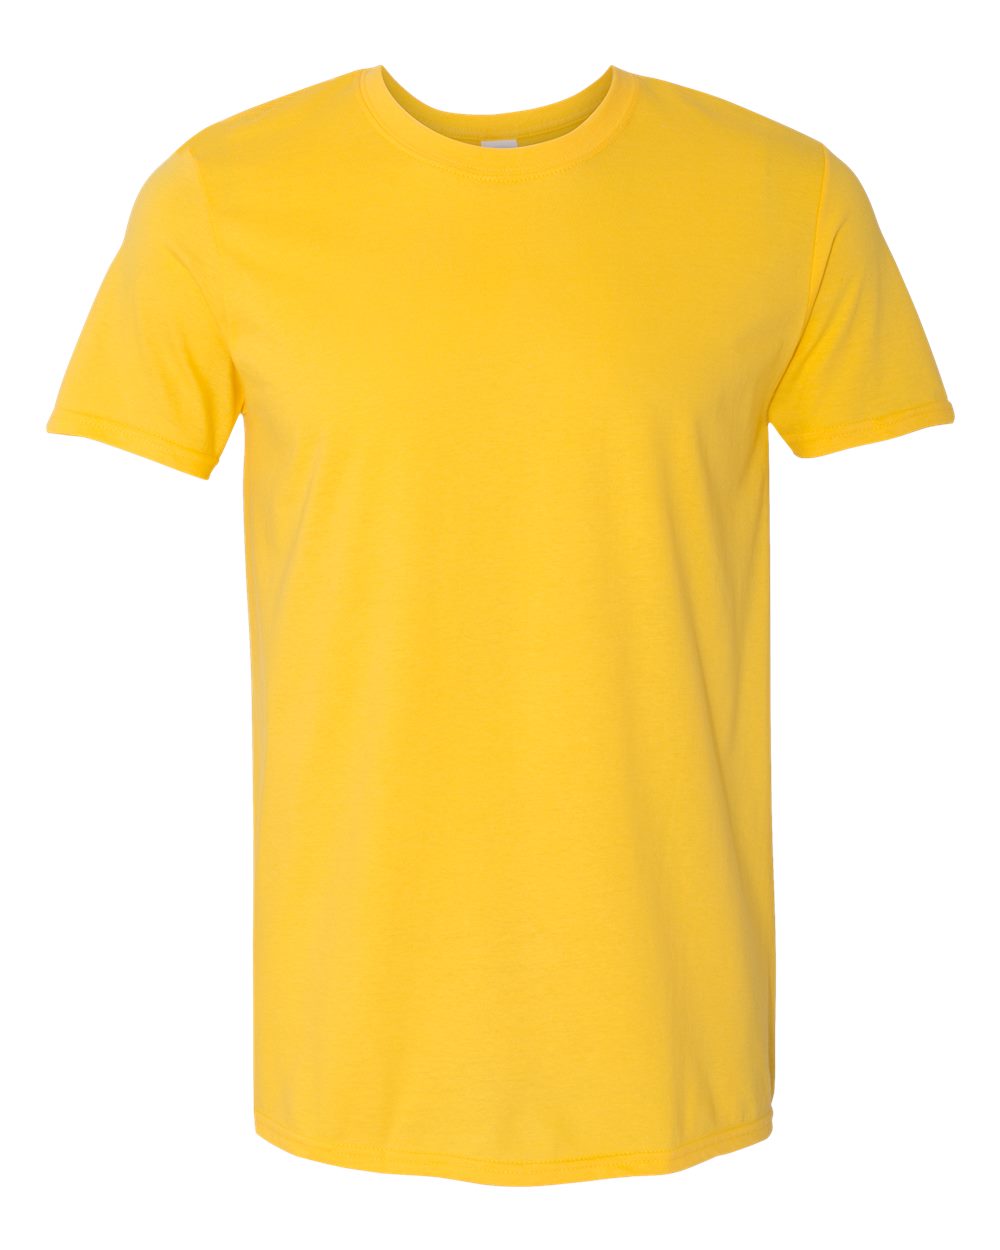 Gildan-Softstyle® T-Shirt-64000 - Daisy